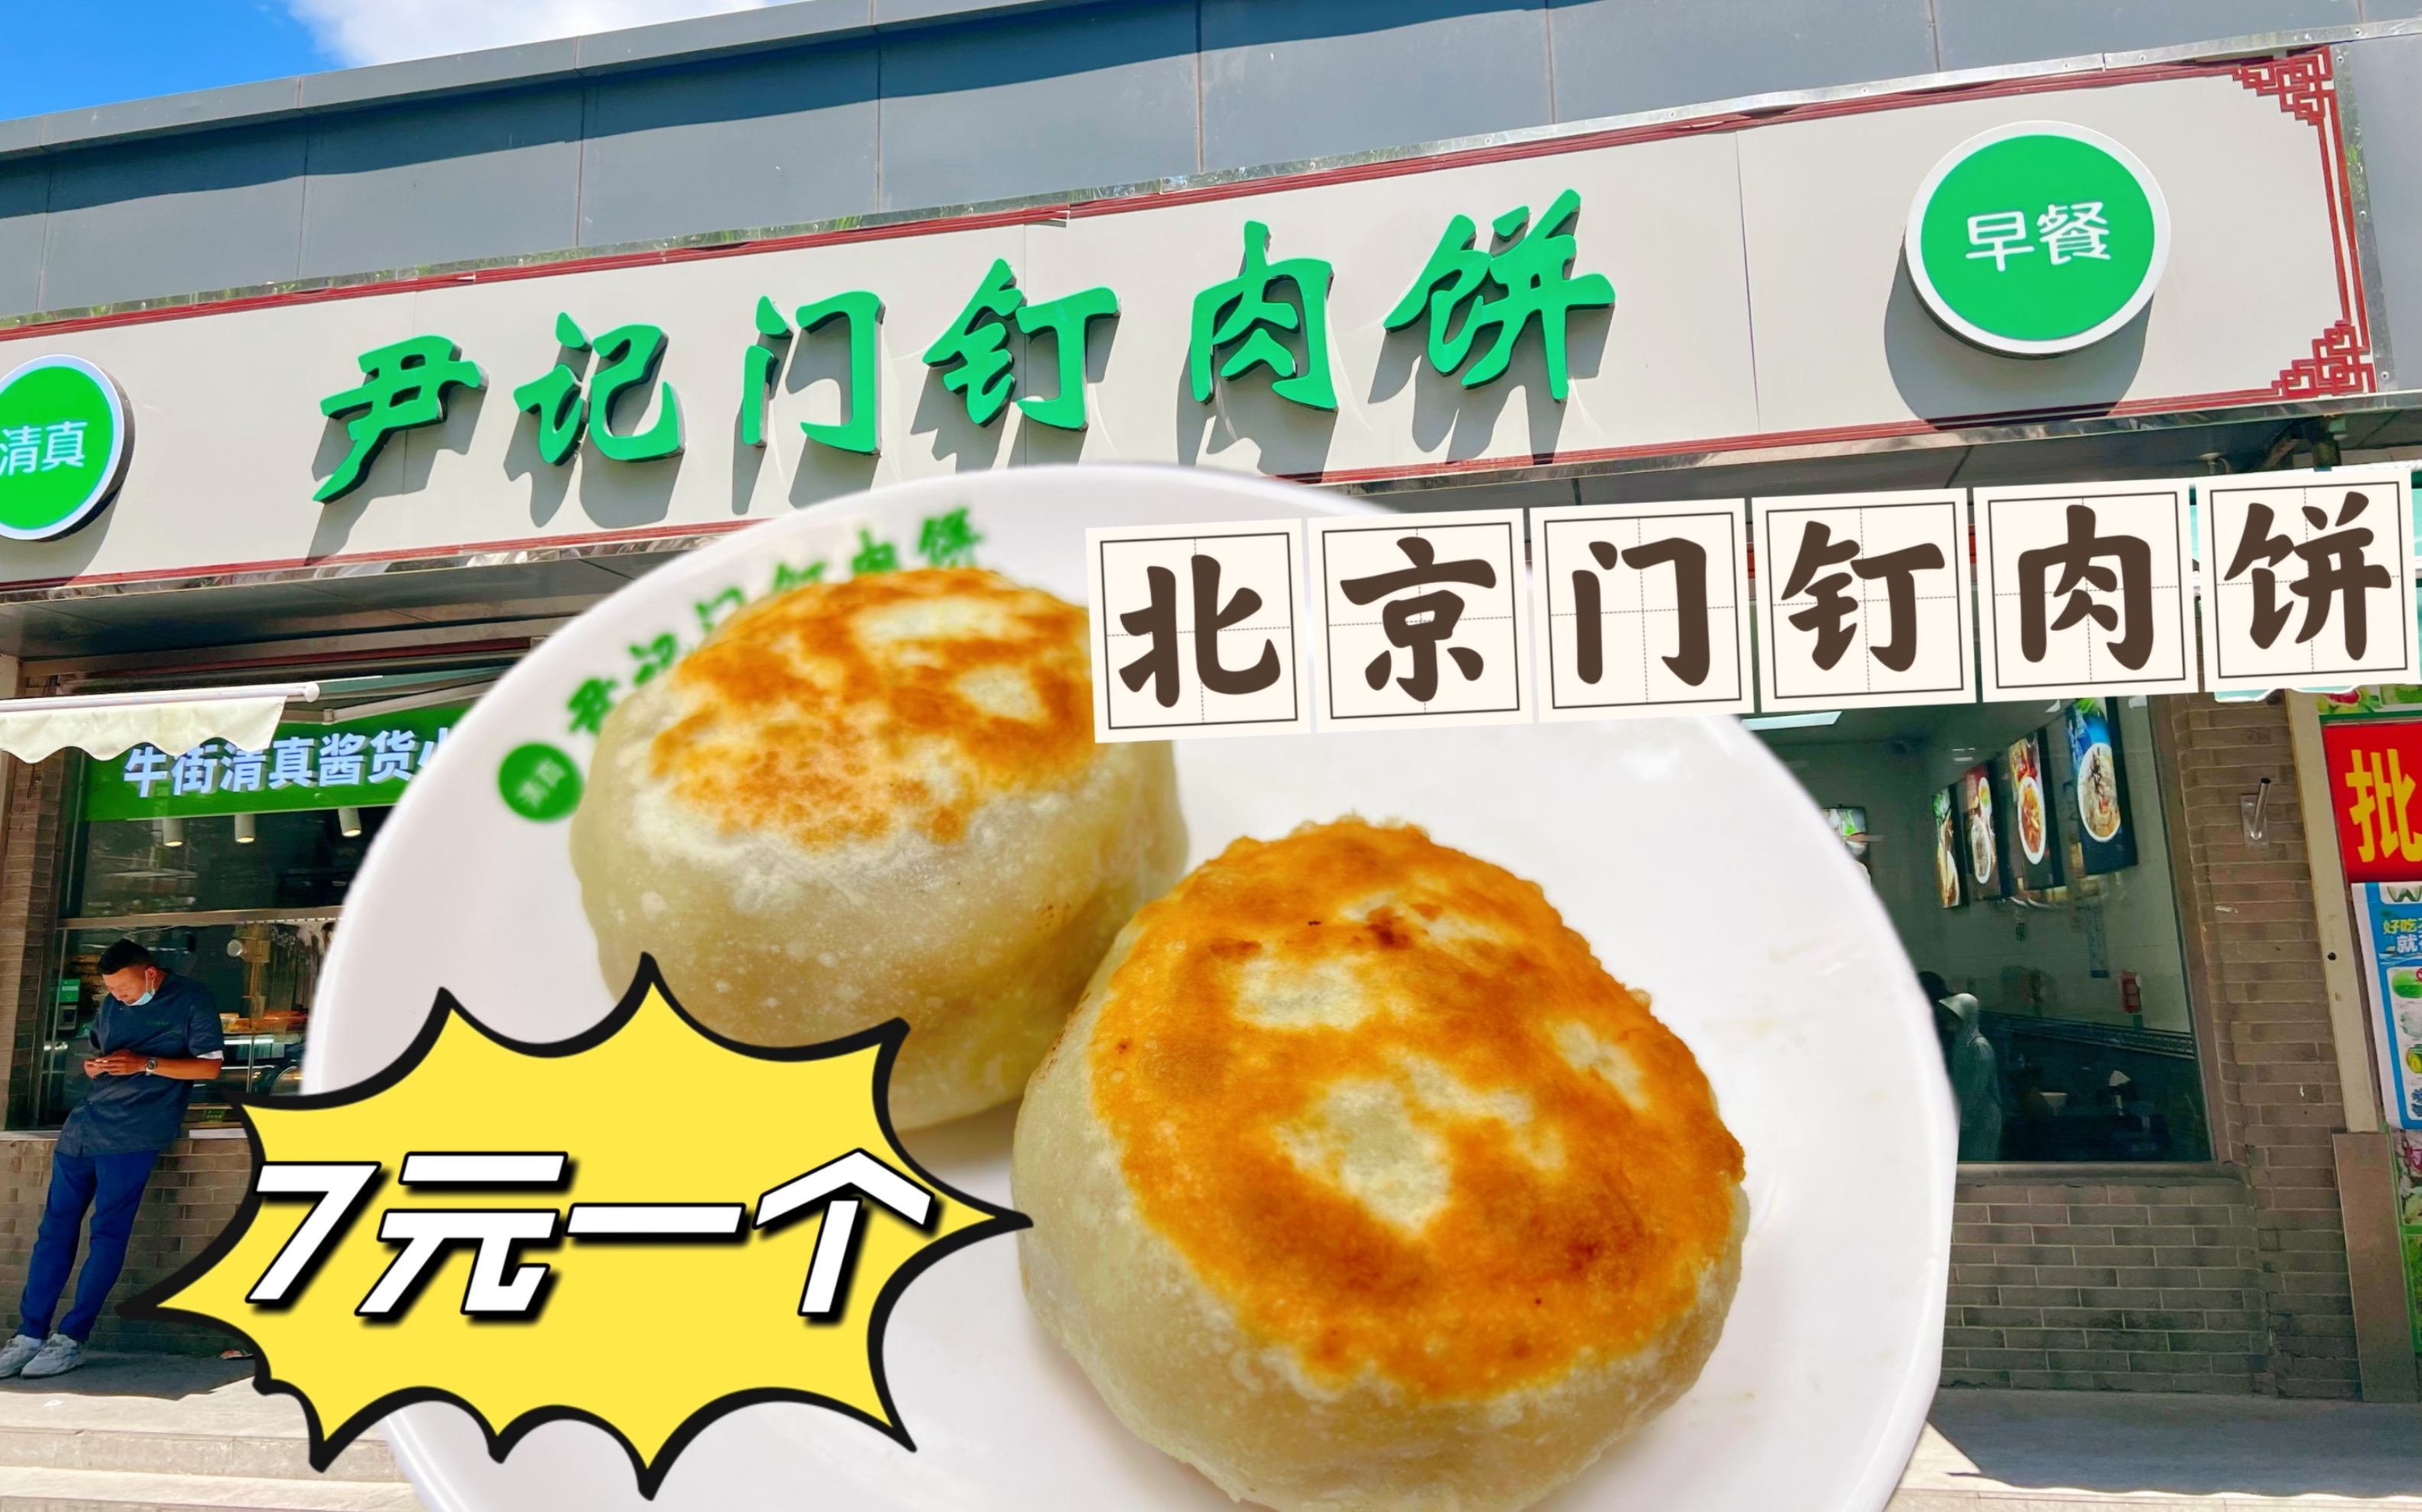 北京社区里的门钉肉饼店，7元一个目前找到最便宜的了，实话说味道不怎么样！